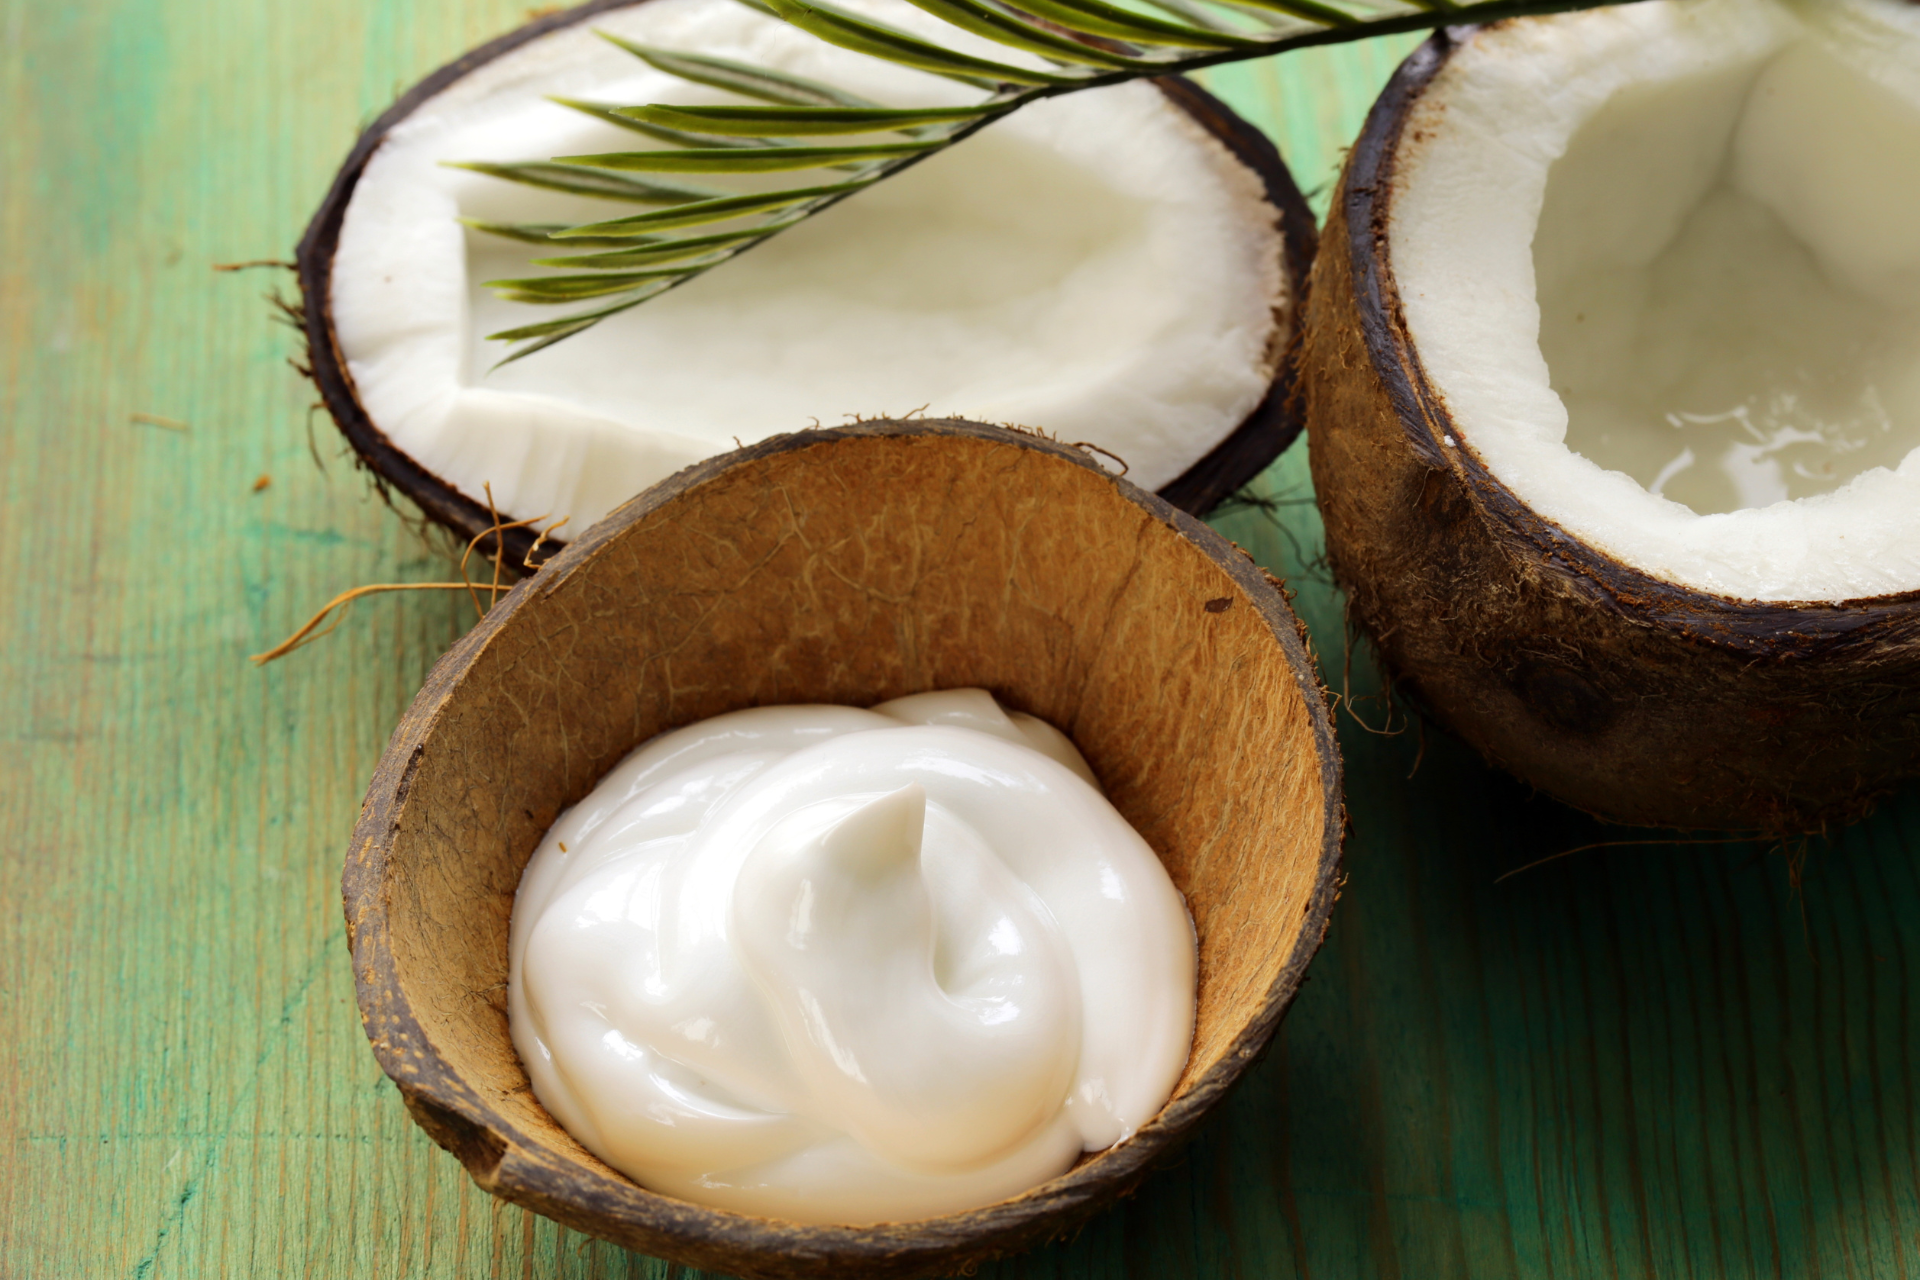 Coconut body moisturizer